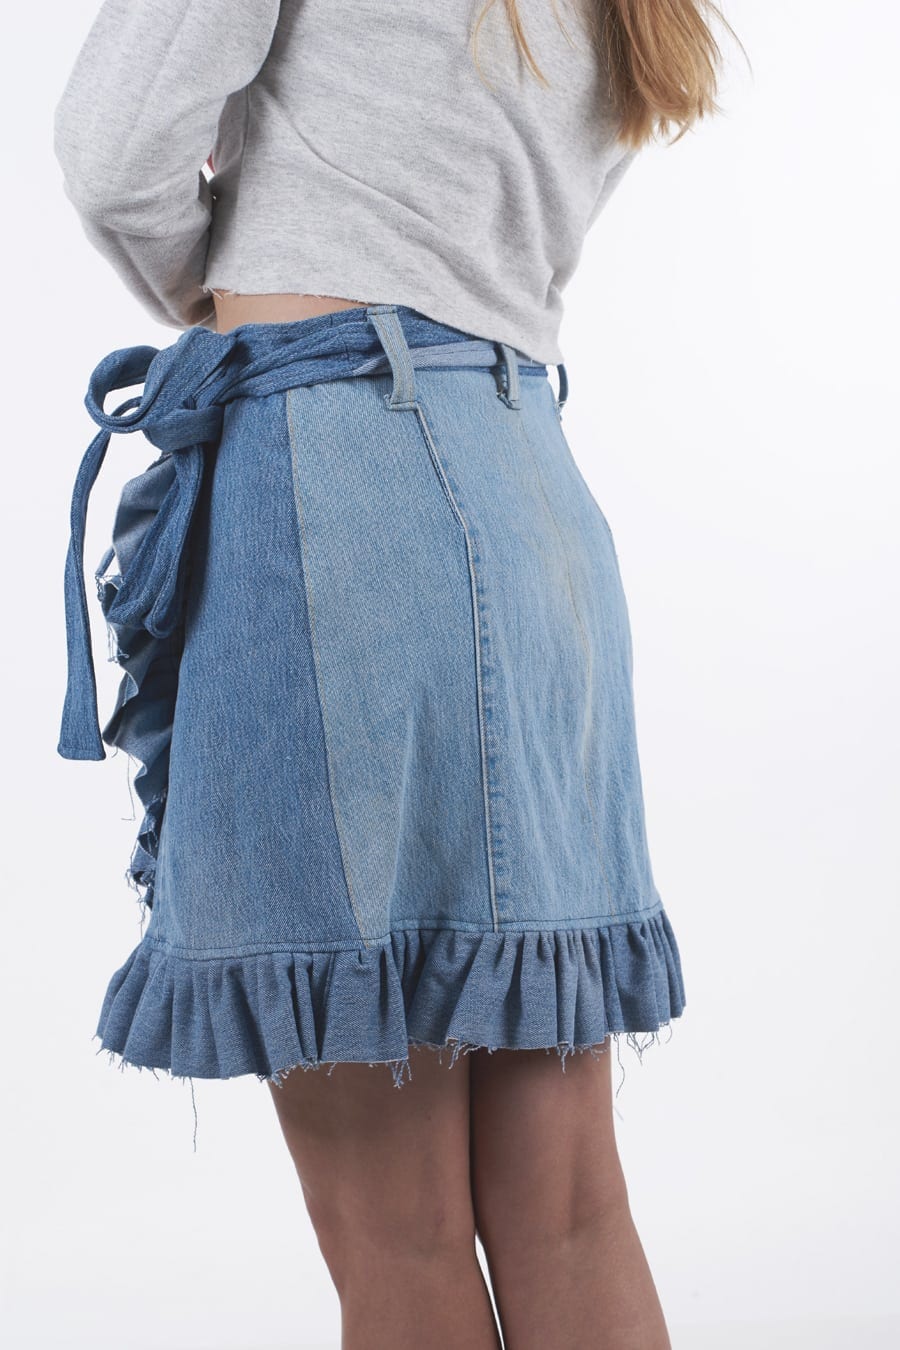 Tie Dye Jean Skirt • Size 7 • Women’s Juniors Ladies • upcycled reworked hippie jeans skirt • Free Shipping! Kleding Dameskleding Rokken 